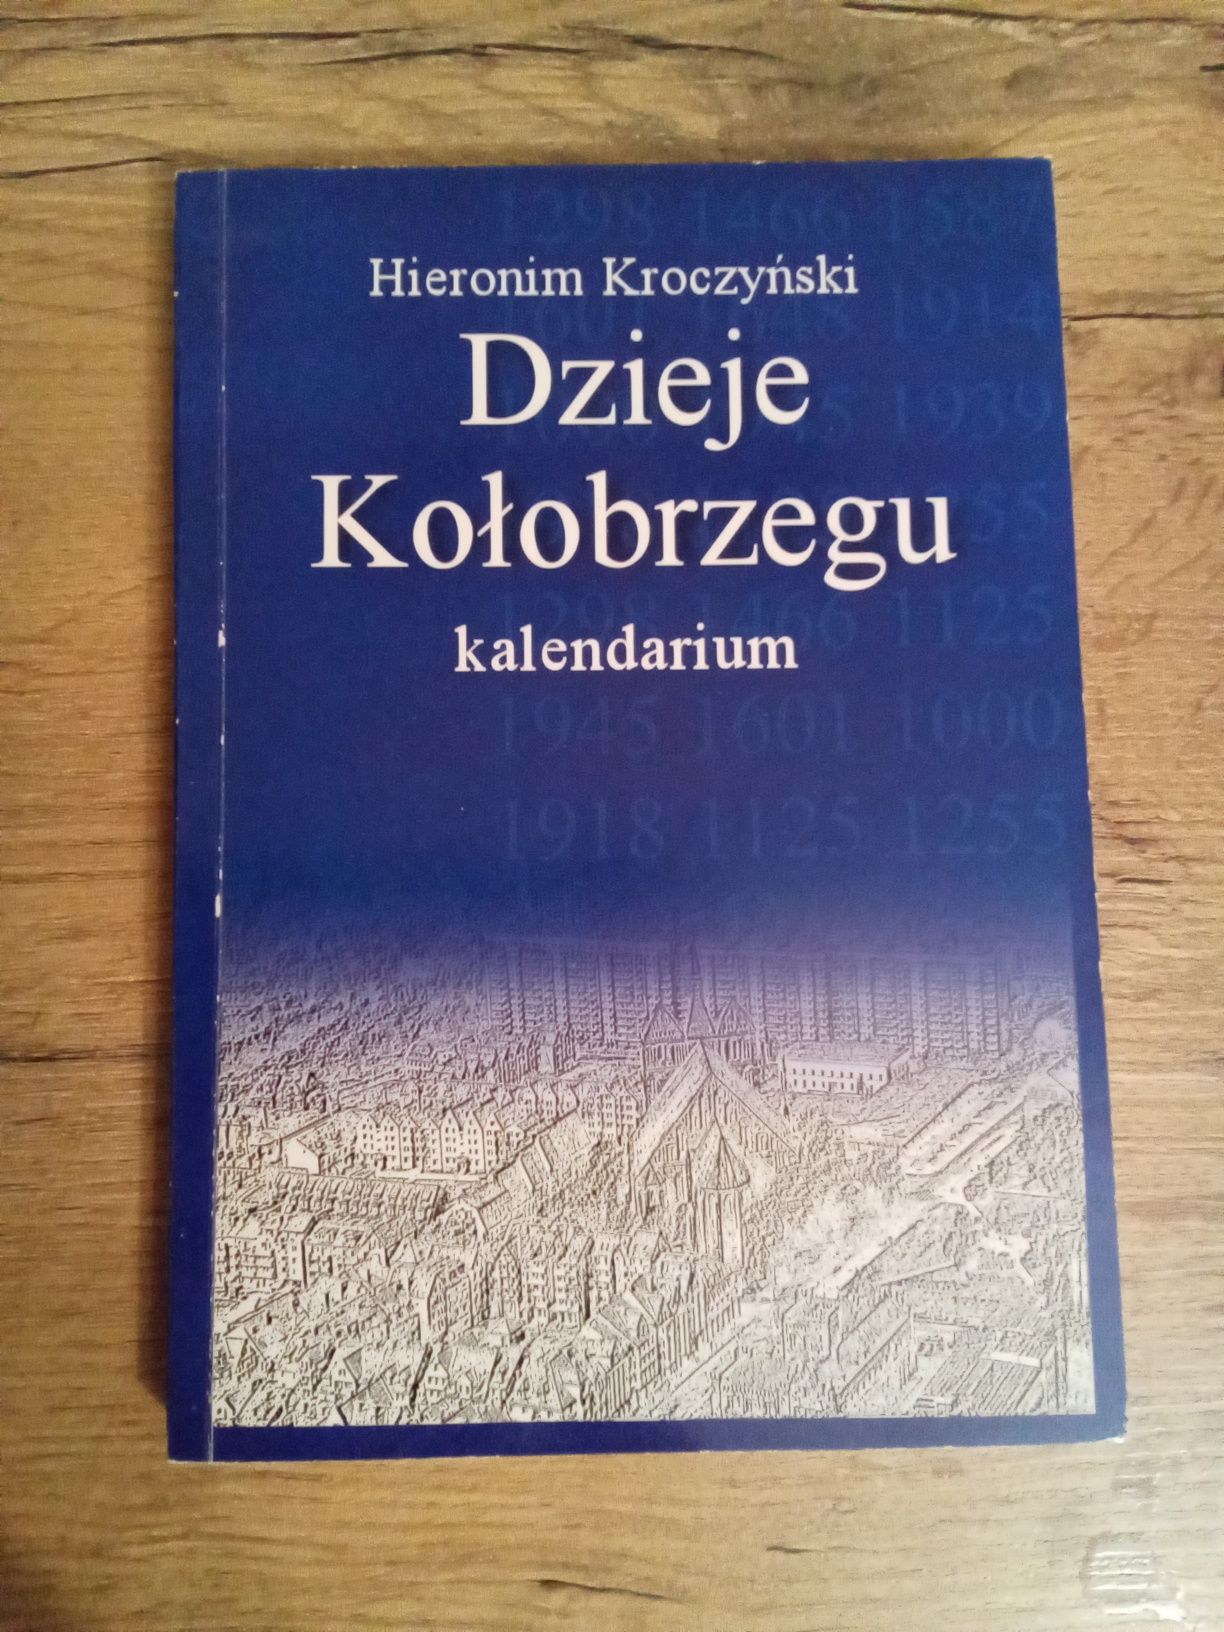 Dzieje Kołobrzegu kalendarium Hieronim Kroczyński KG